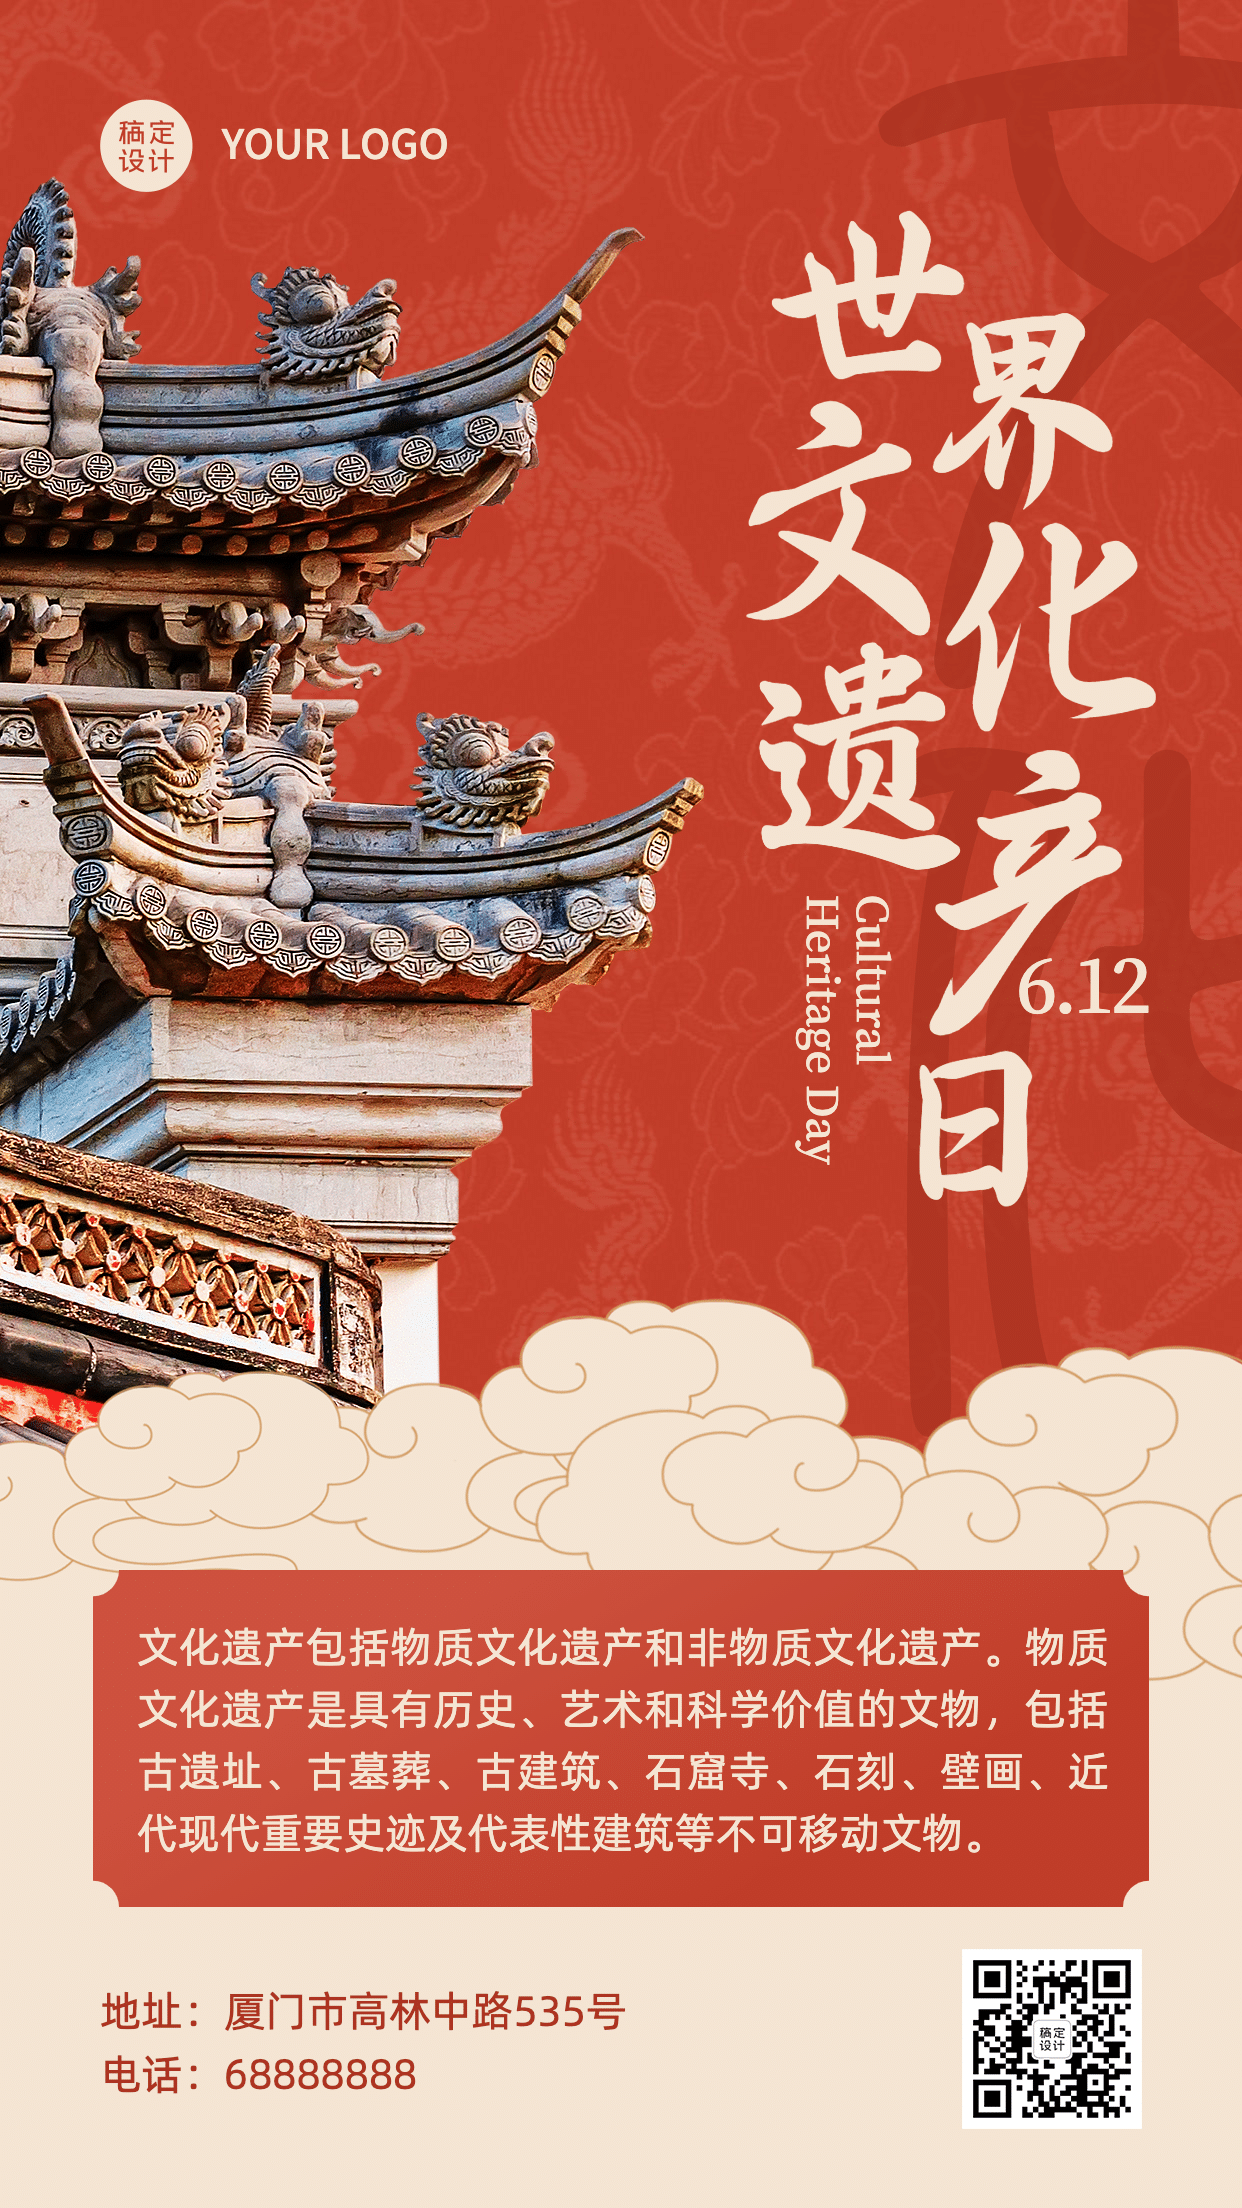 世界中国文化遗产日中式建筑宣传中国风手机海报